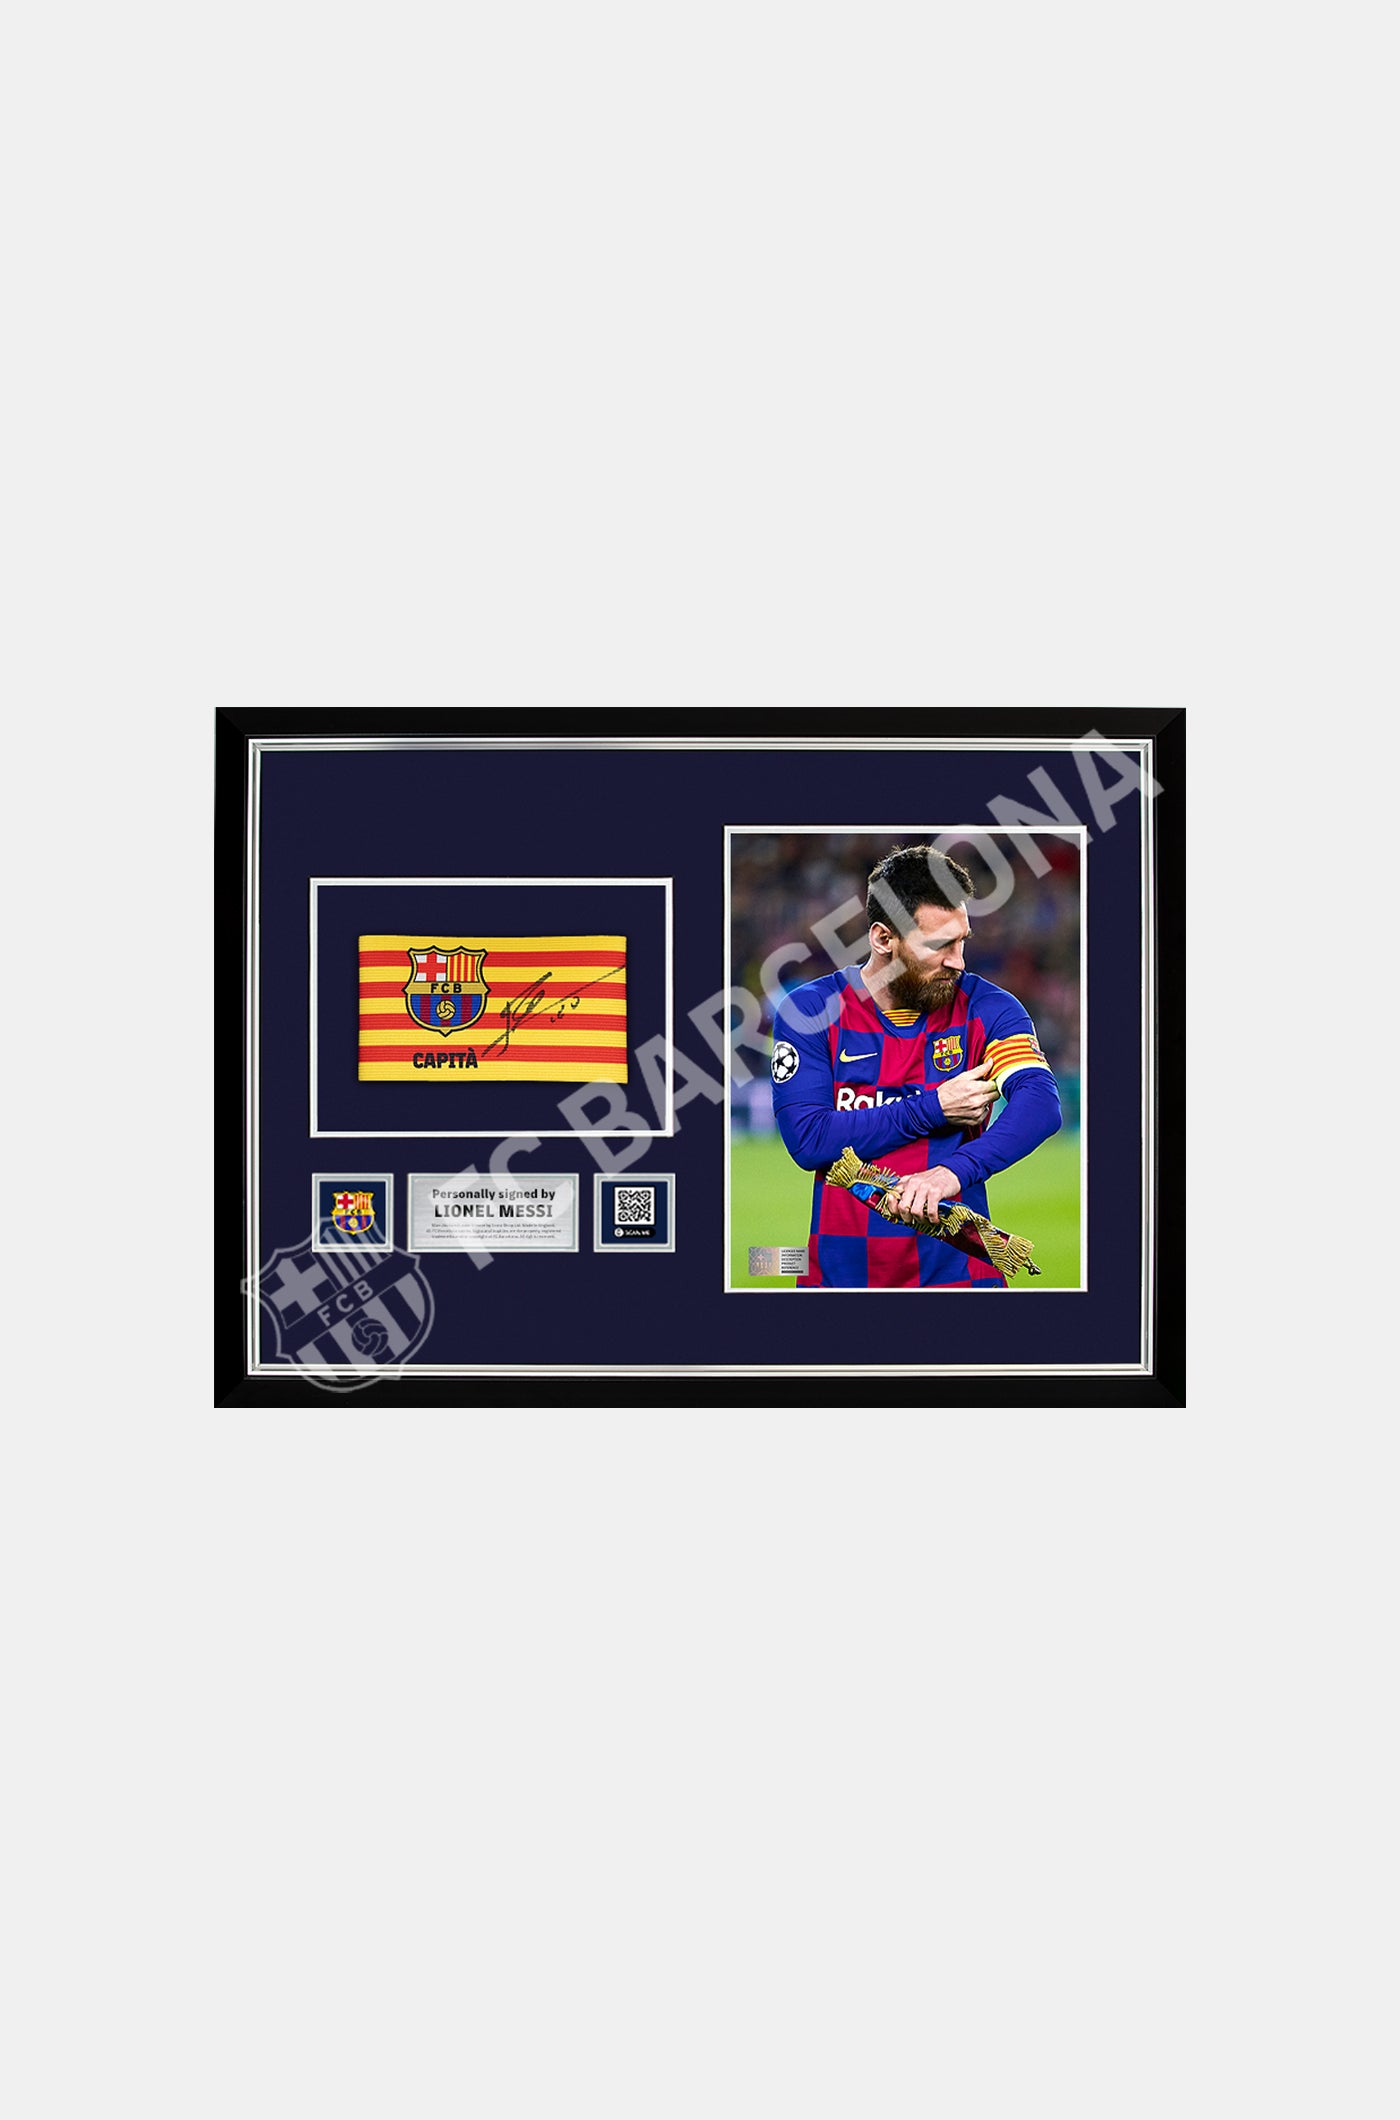 Braçalet de capità oficial del FC Barcelona signat per Leo Messi.